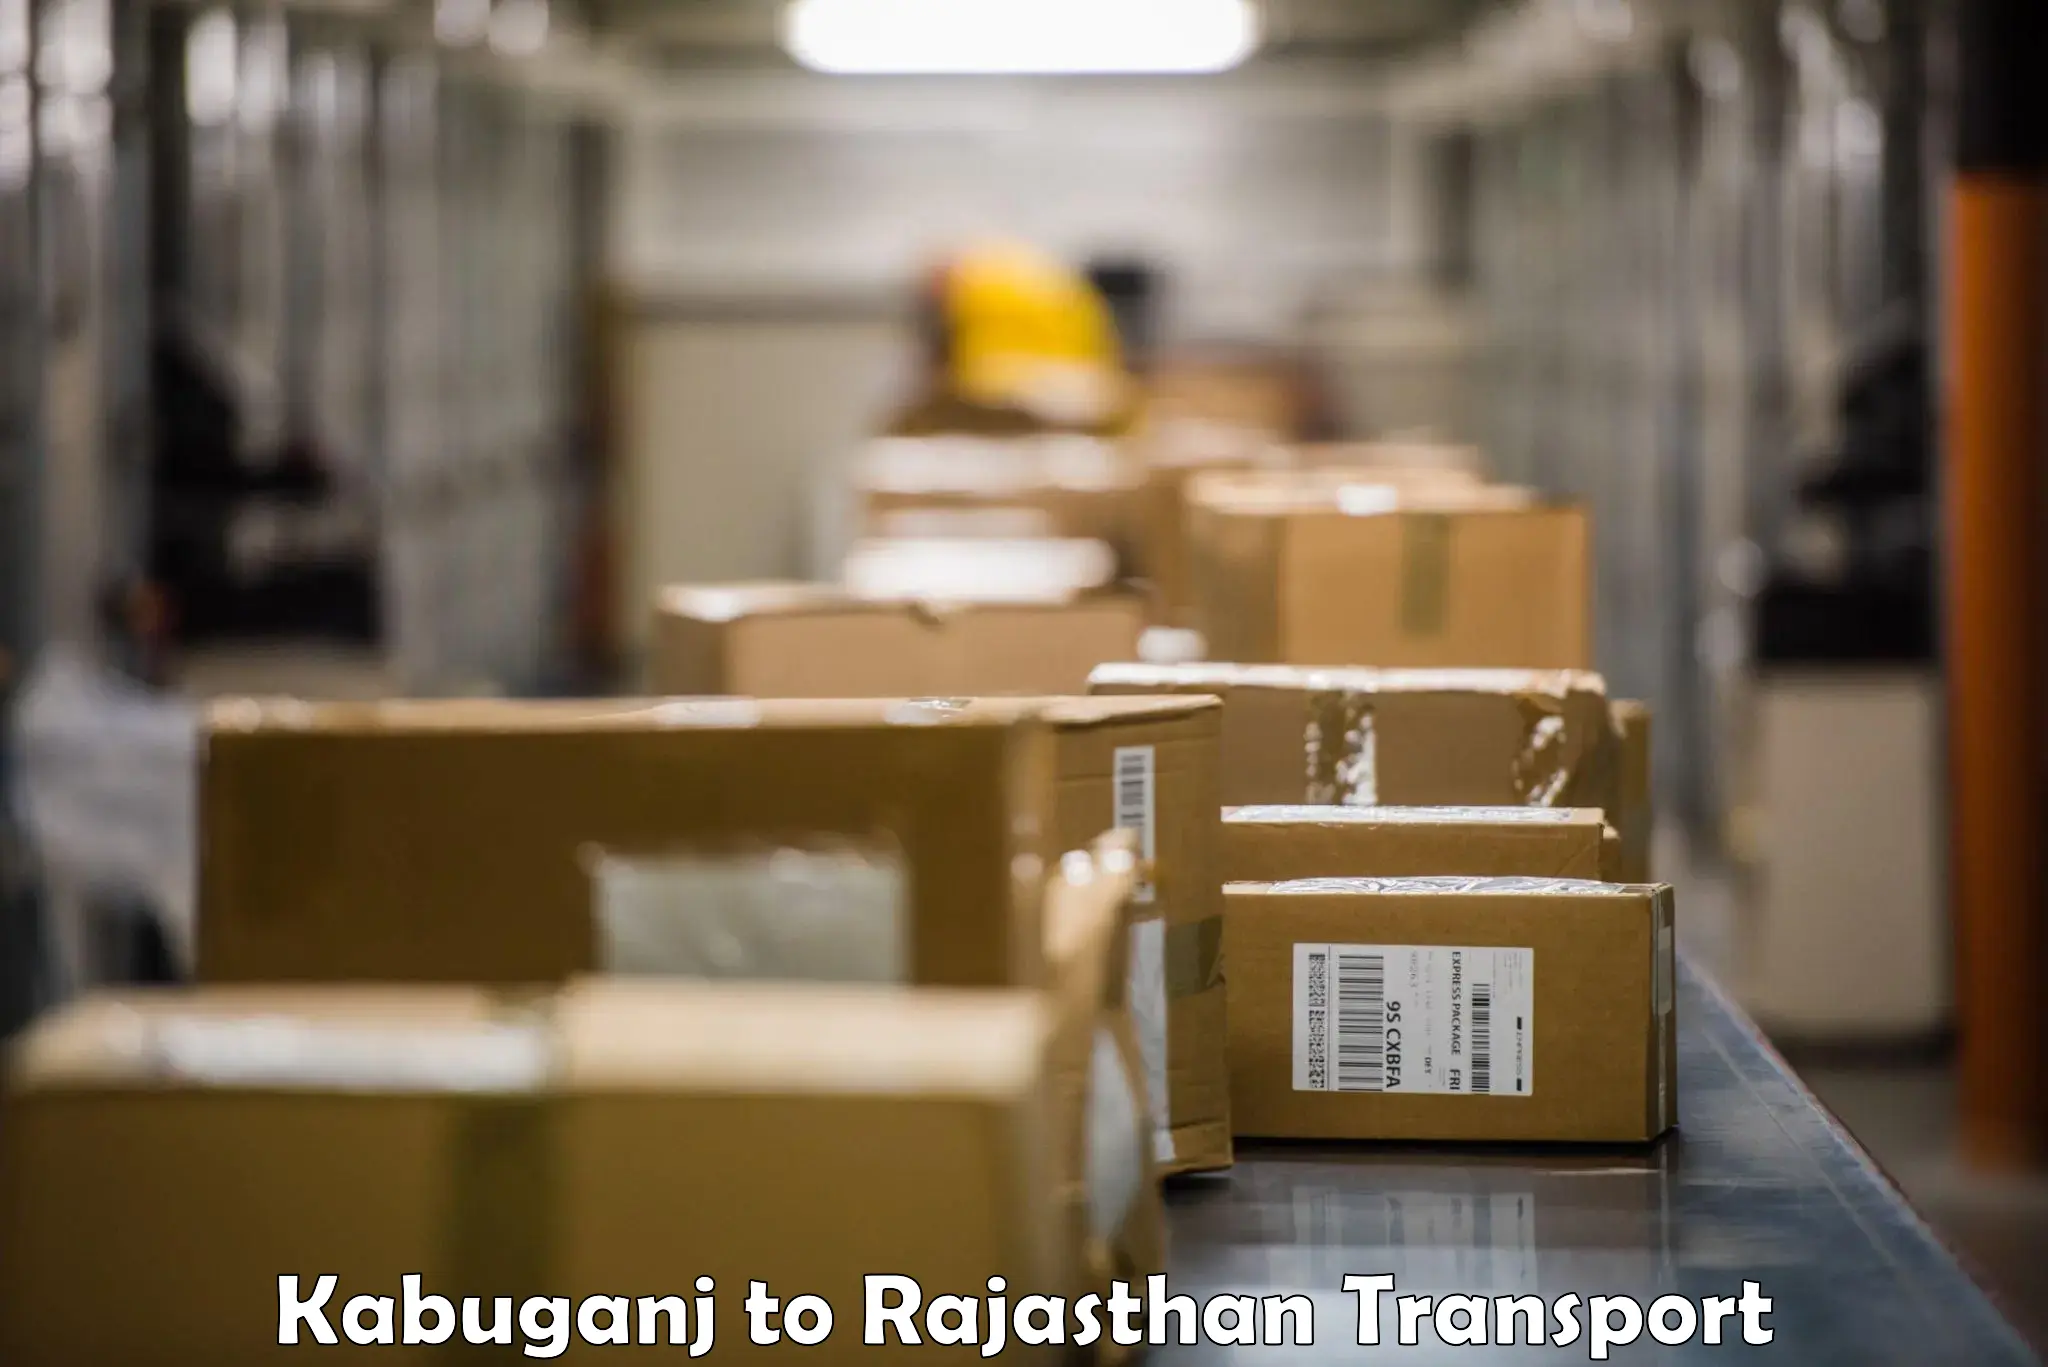 Land transport services in Kabuganj to NIT Jaipur